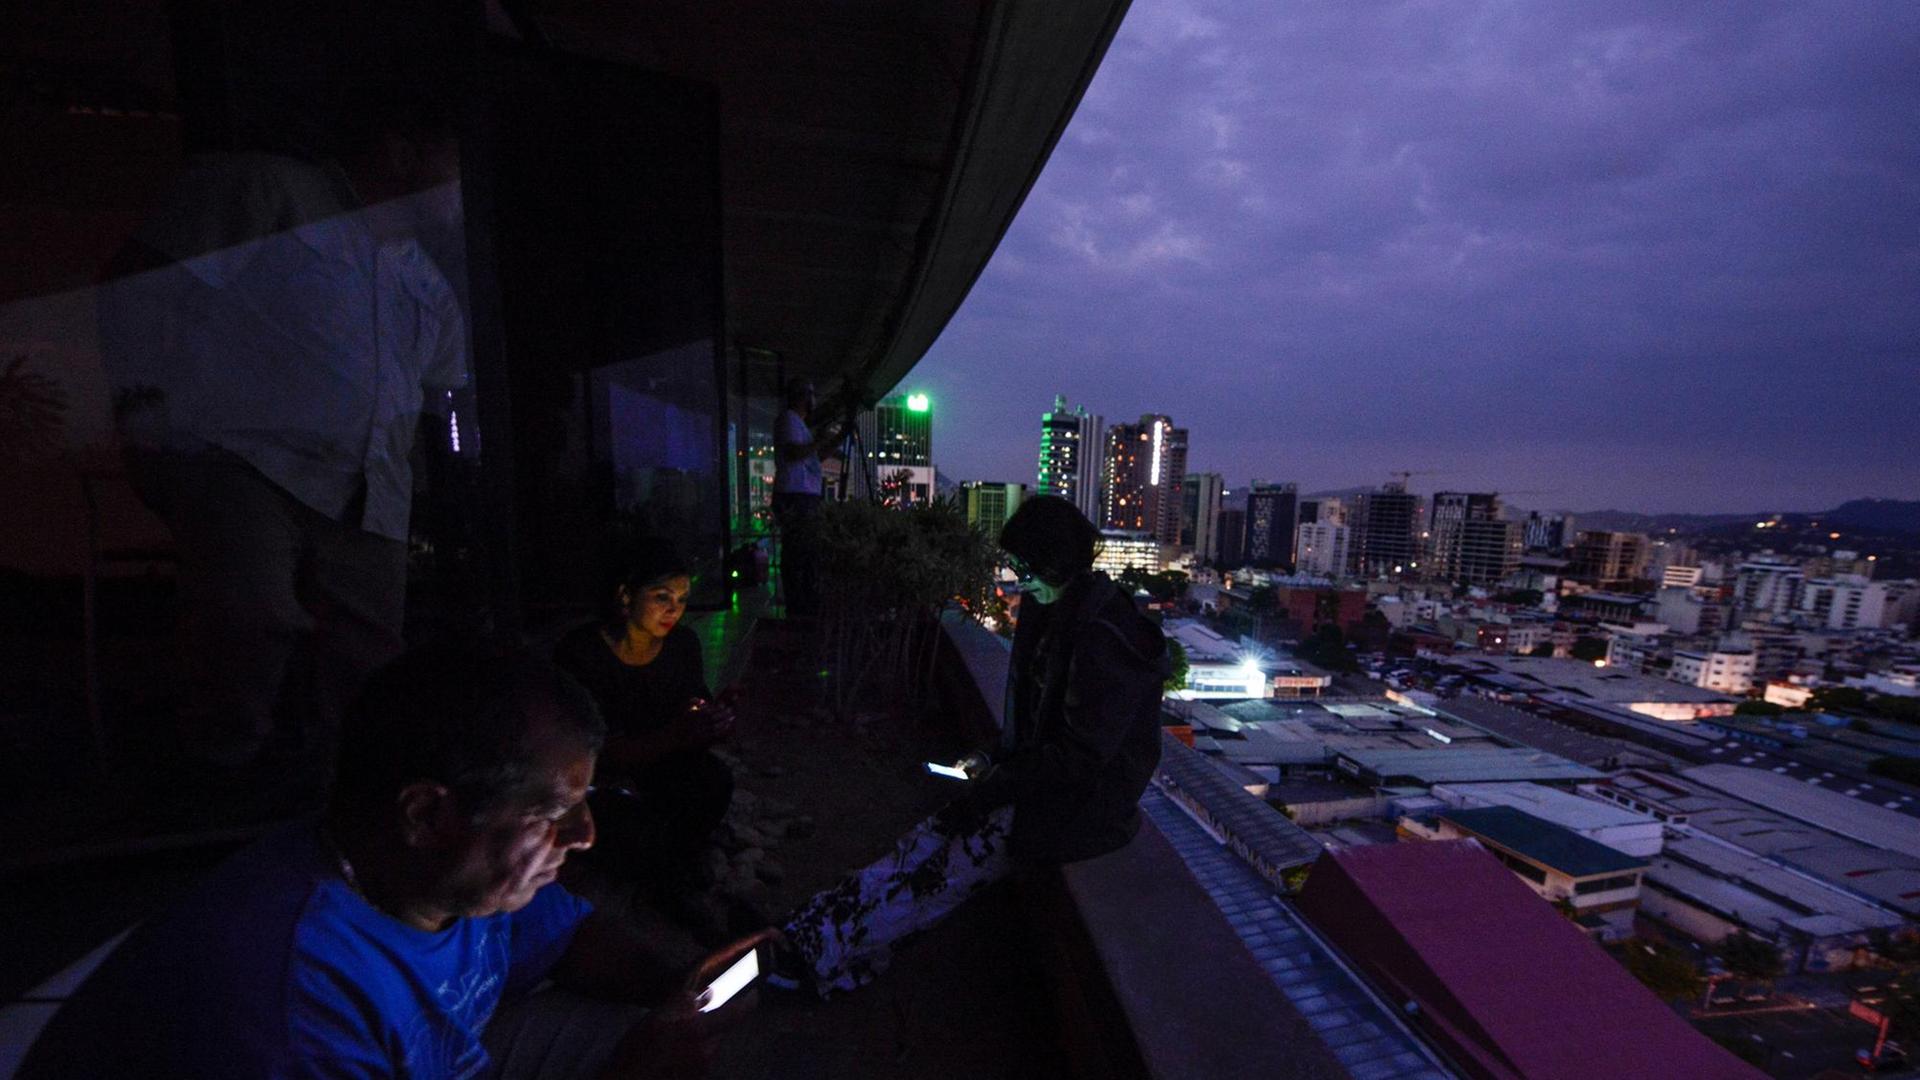 Journalisten blicken auf ihre Smartphones, während Venezuelas Hauptstadt Caracas im Dunkeln liegt